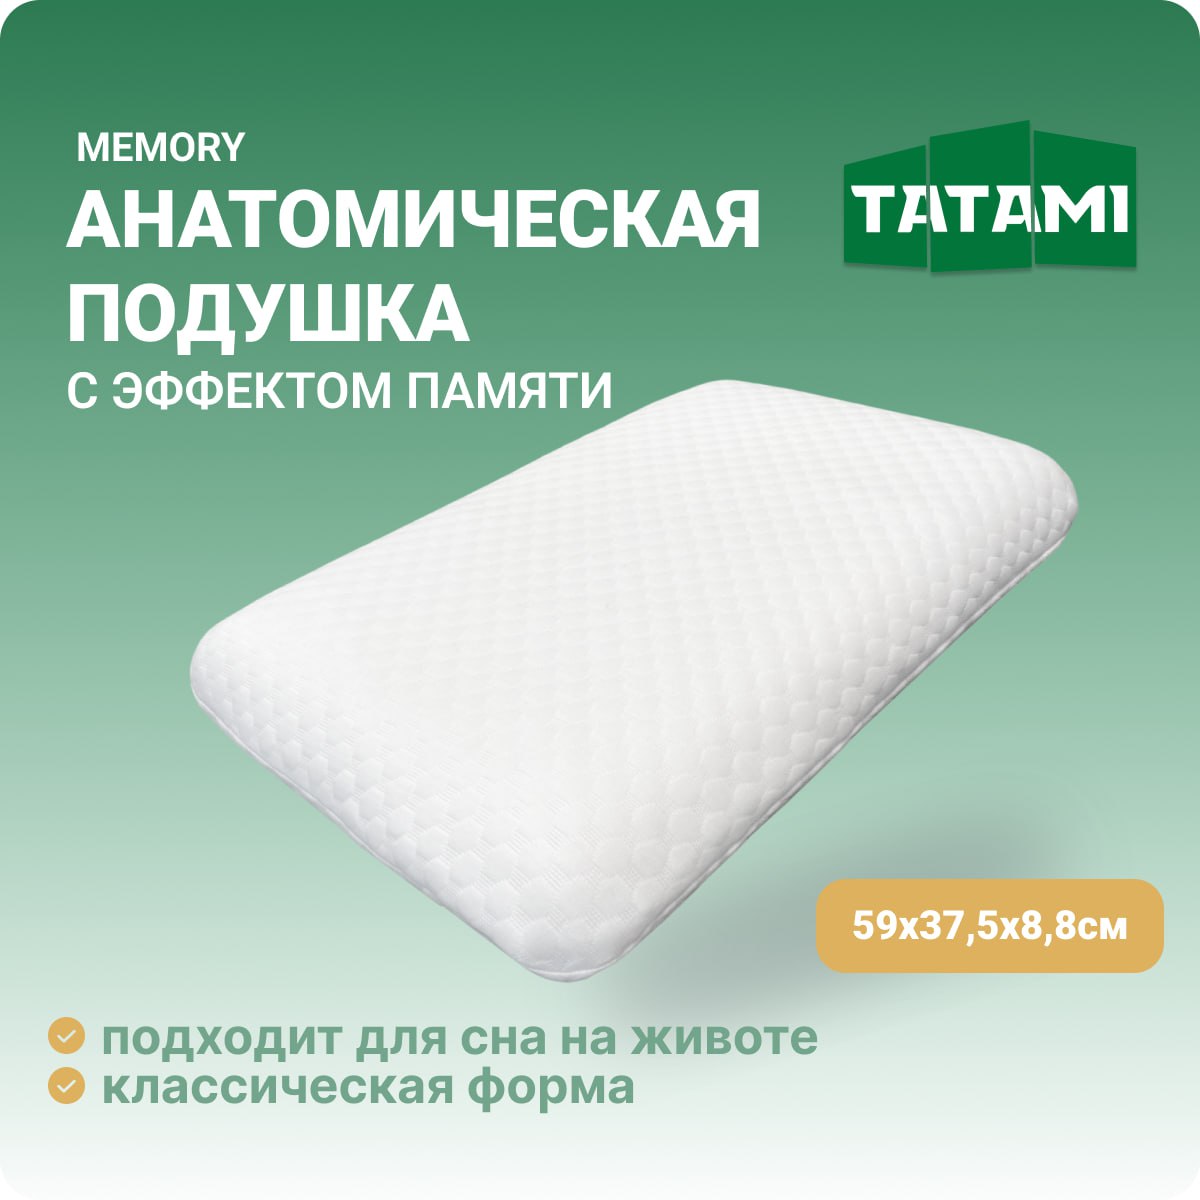 Анатомическая подушка с эффектом памяти для сна Tatami Memory 38x59 см, высота 8.8 см